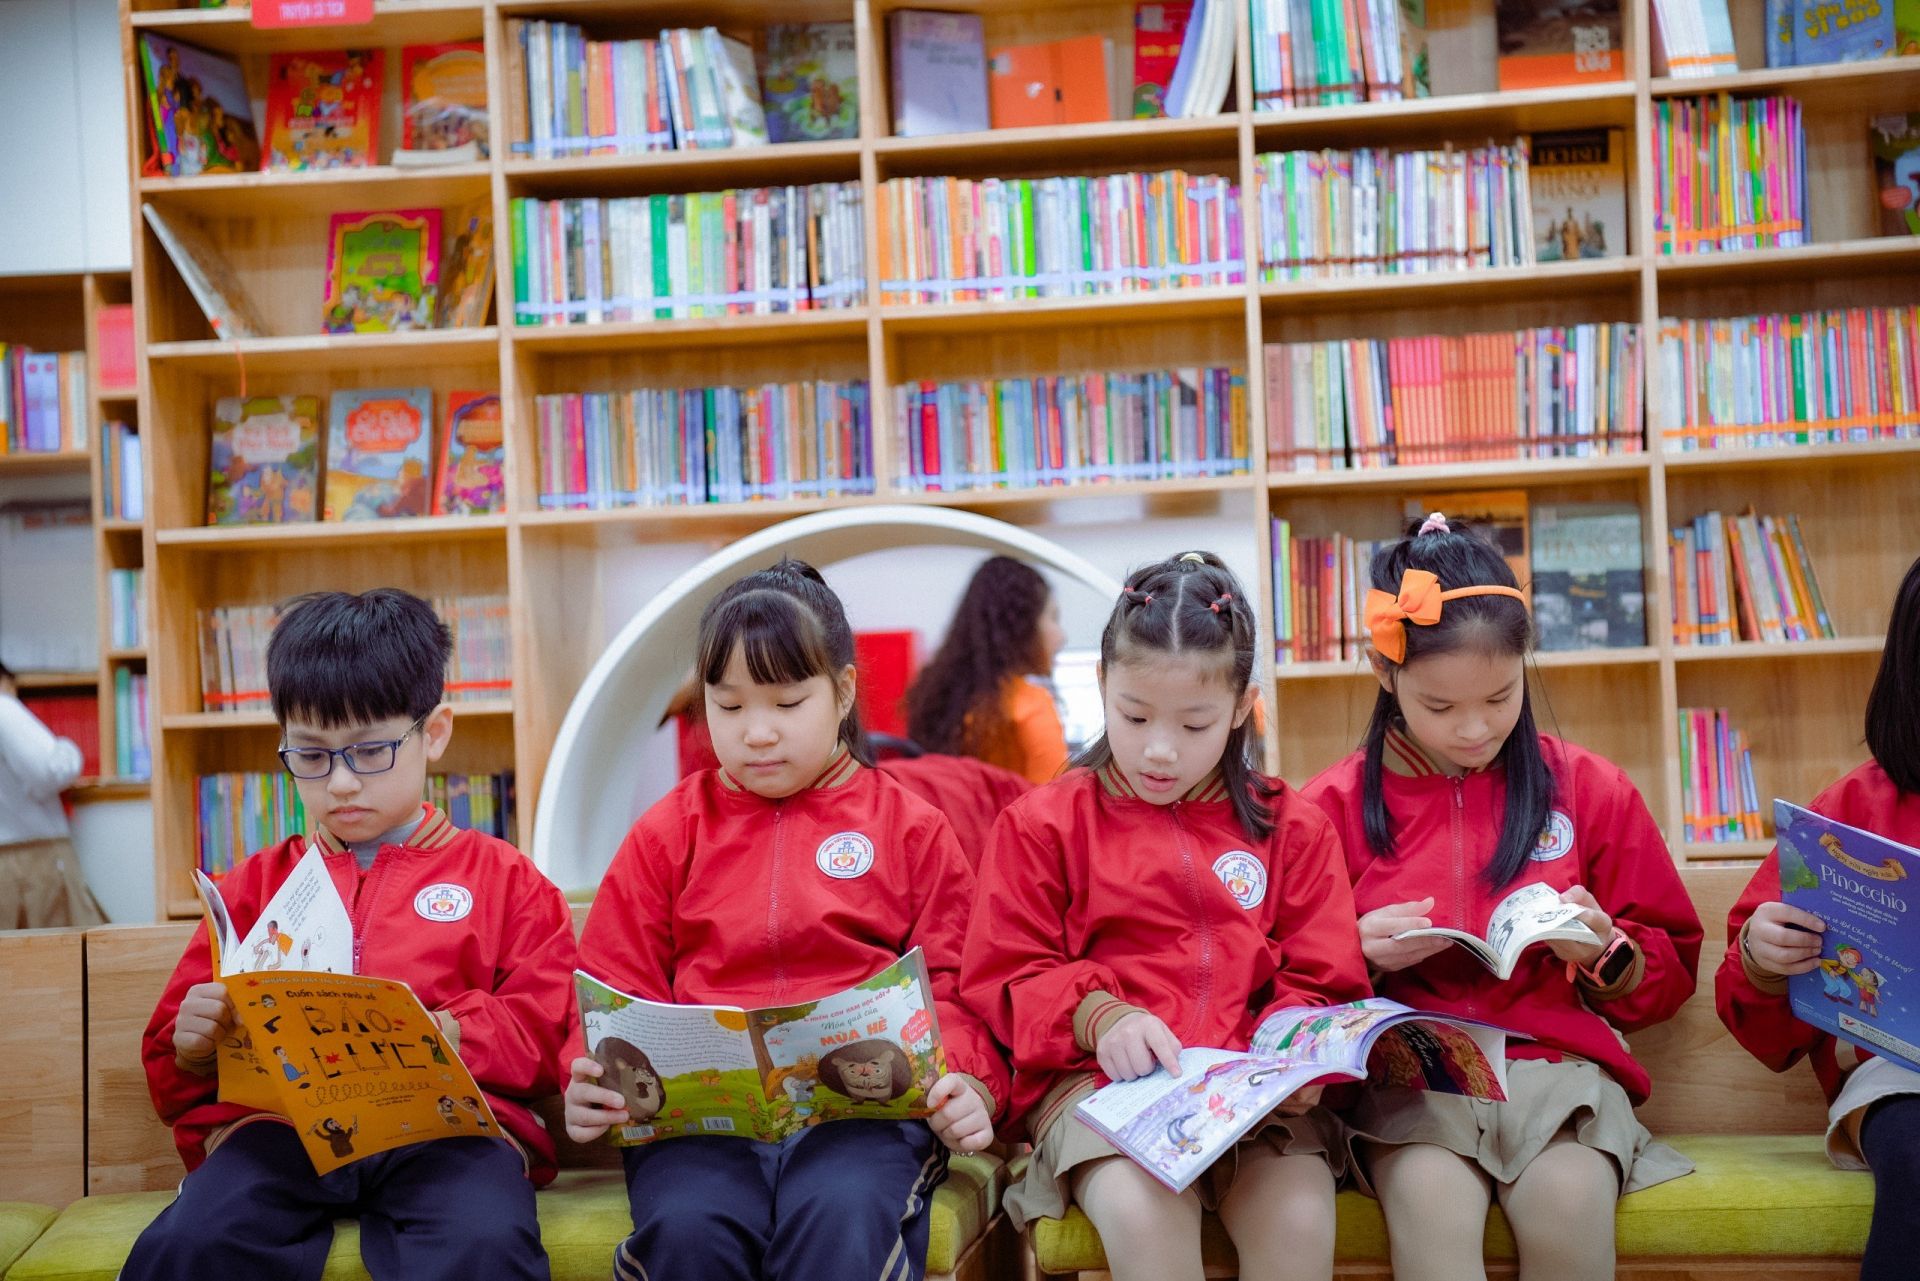 Diễn đàn là một trong những hoạt động phát triển văn hóa đọc tại trường Tiểu học Quang Trung.